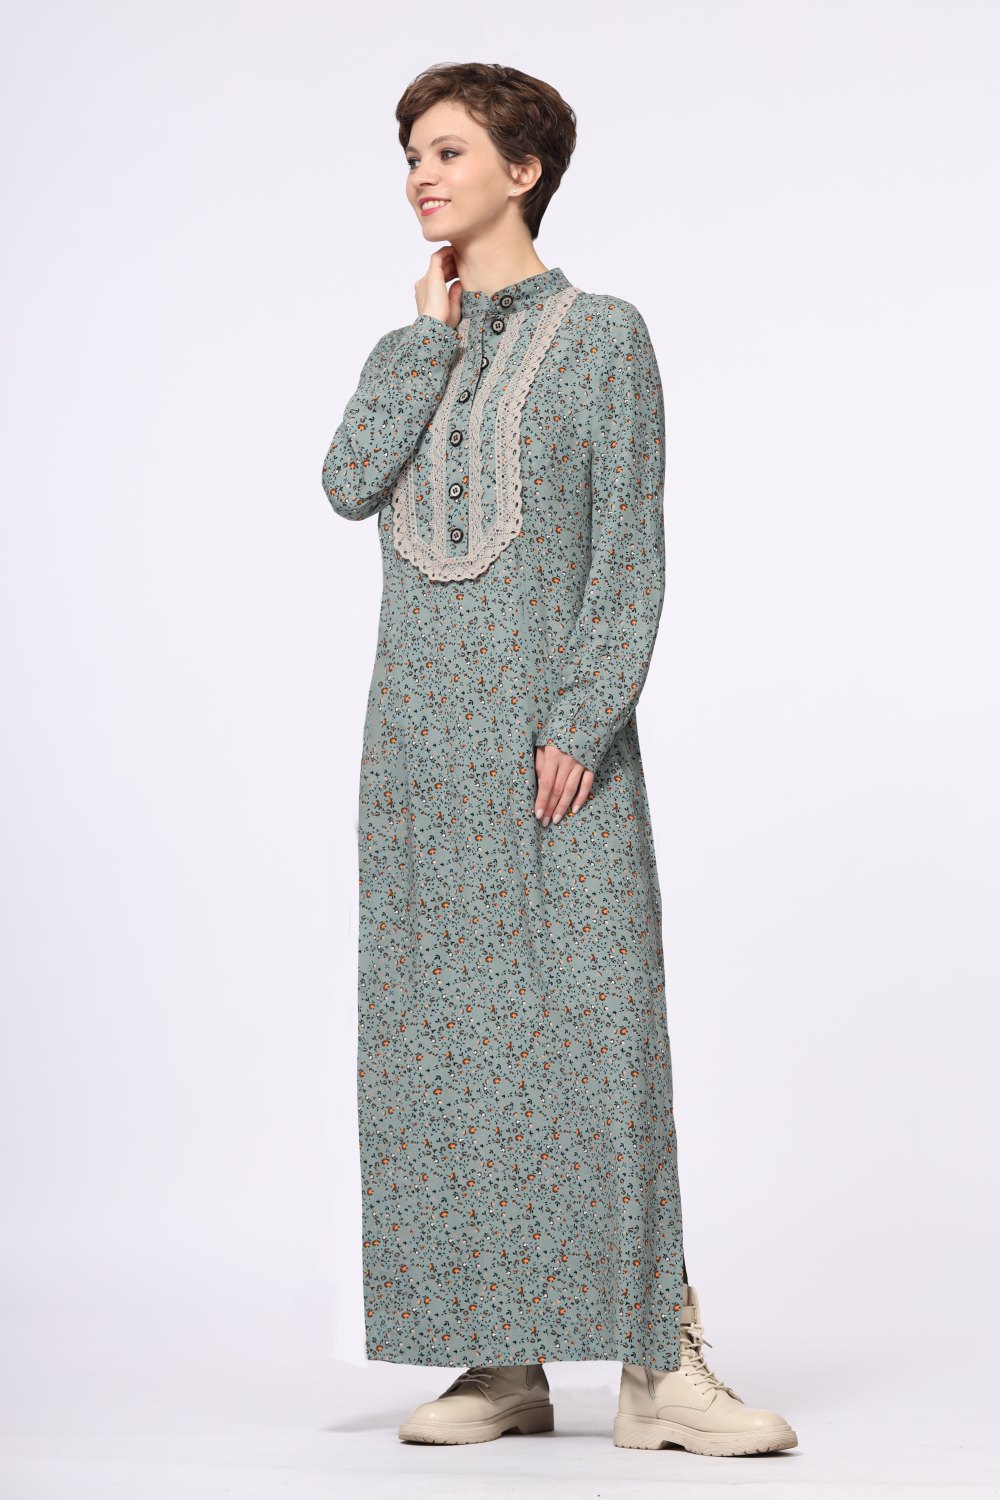 Платье женское "Марья" макси модель 475/3 вискоза серо-голубые цветочки